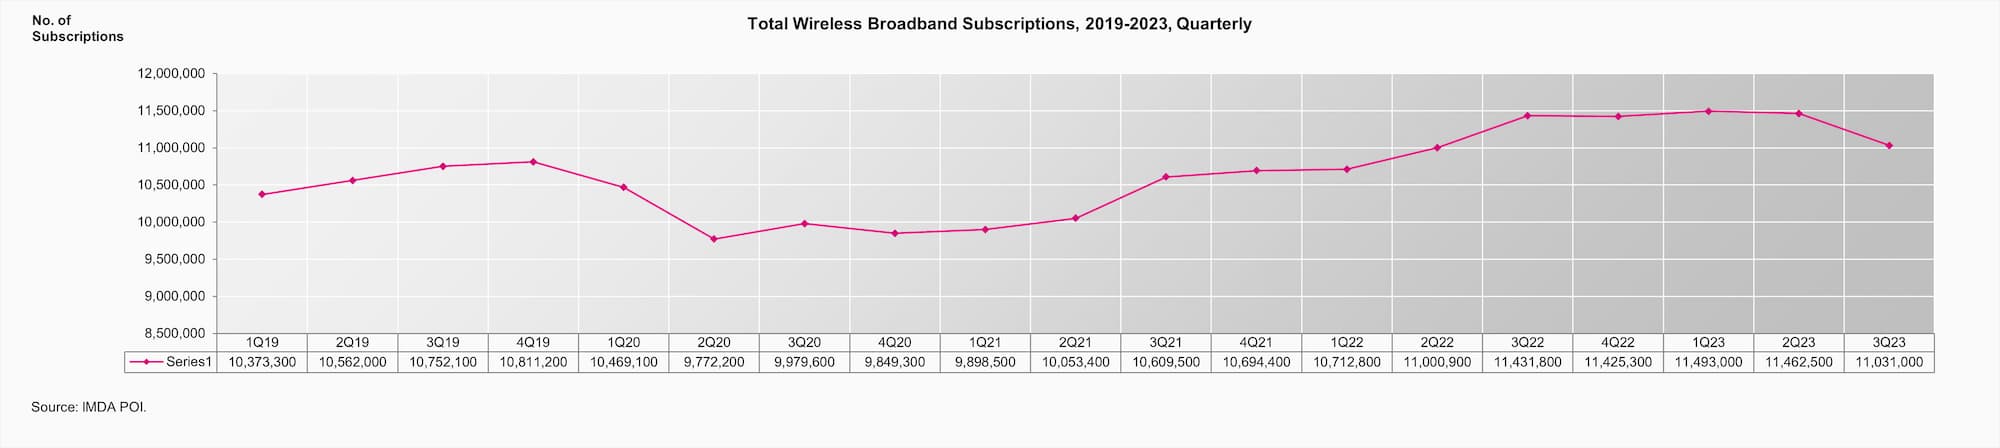 Q3 Total Wireless Broadband Subscriptions